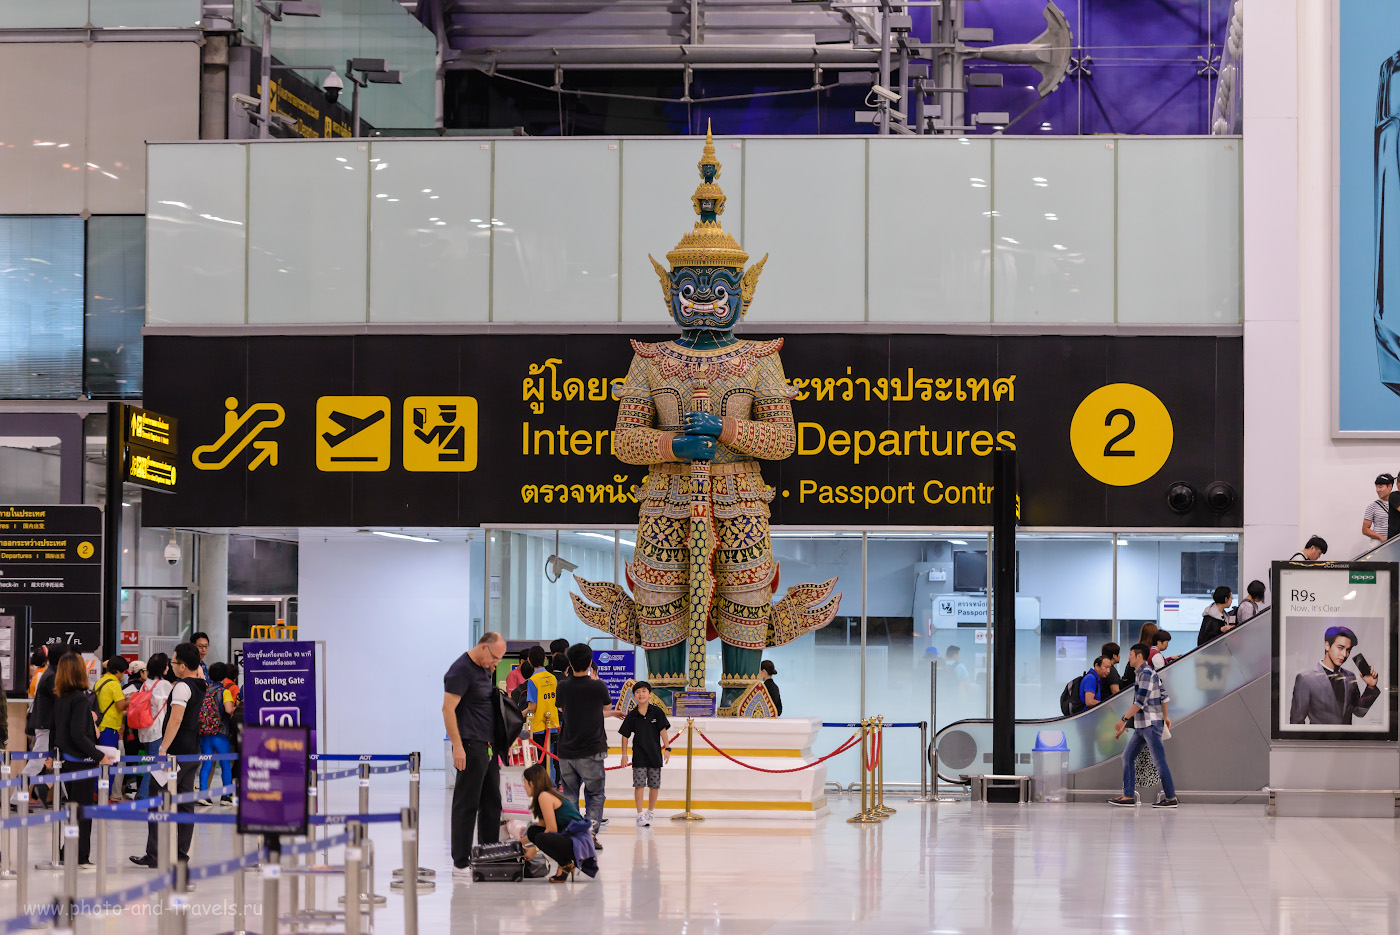 Фото 32. Божество в зале вылета аэропорта «Суварнабхуми» в Бангкоке. Таких «монстров» можно увидеть во многих храмах Таиланда. 1/250, +0.33, 2.8, 2000, 112.